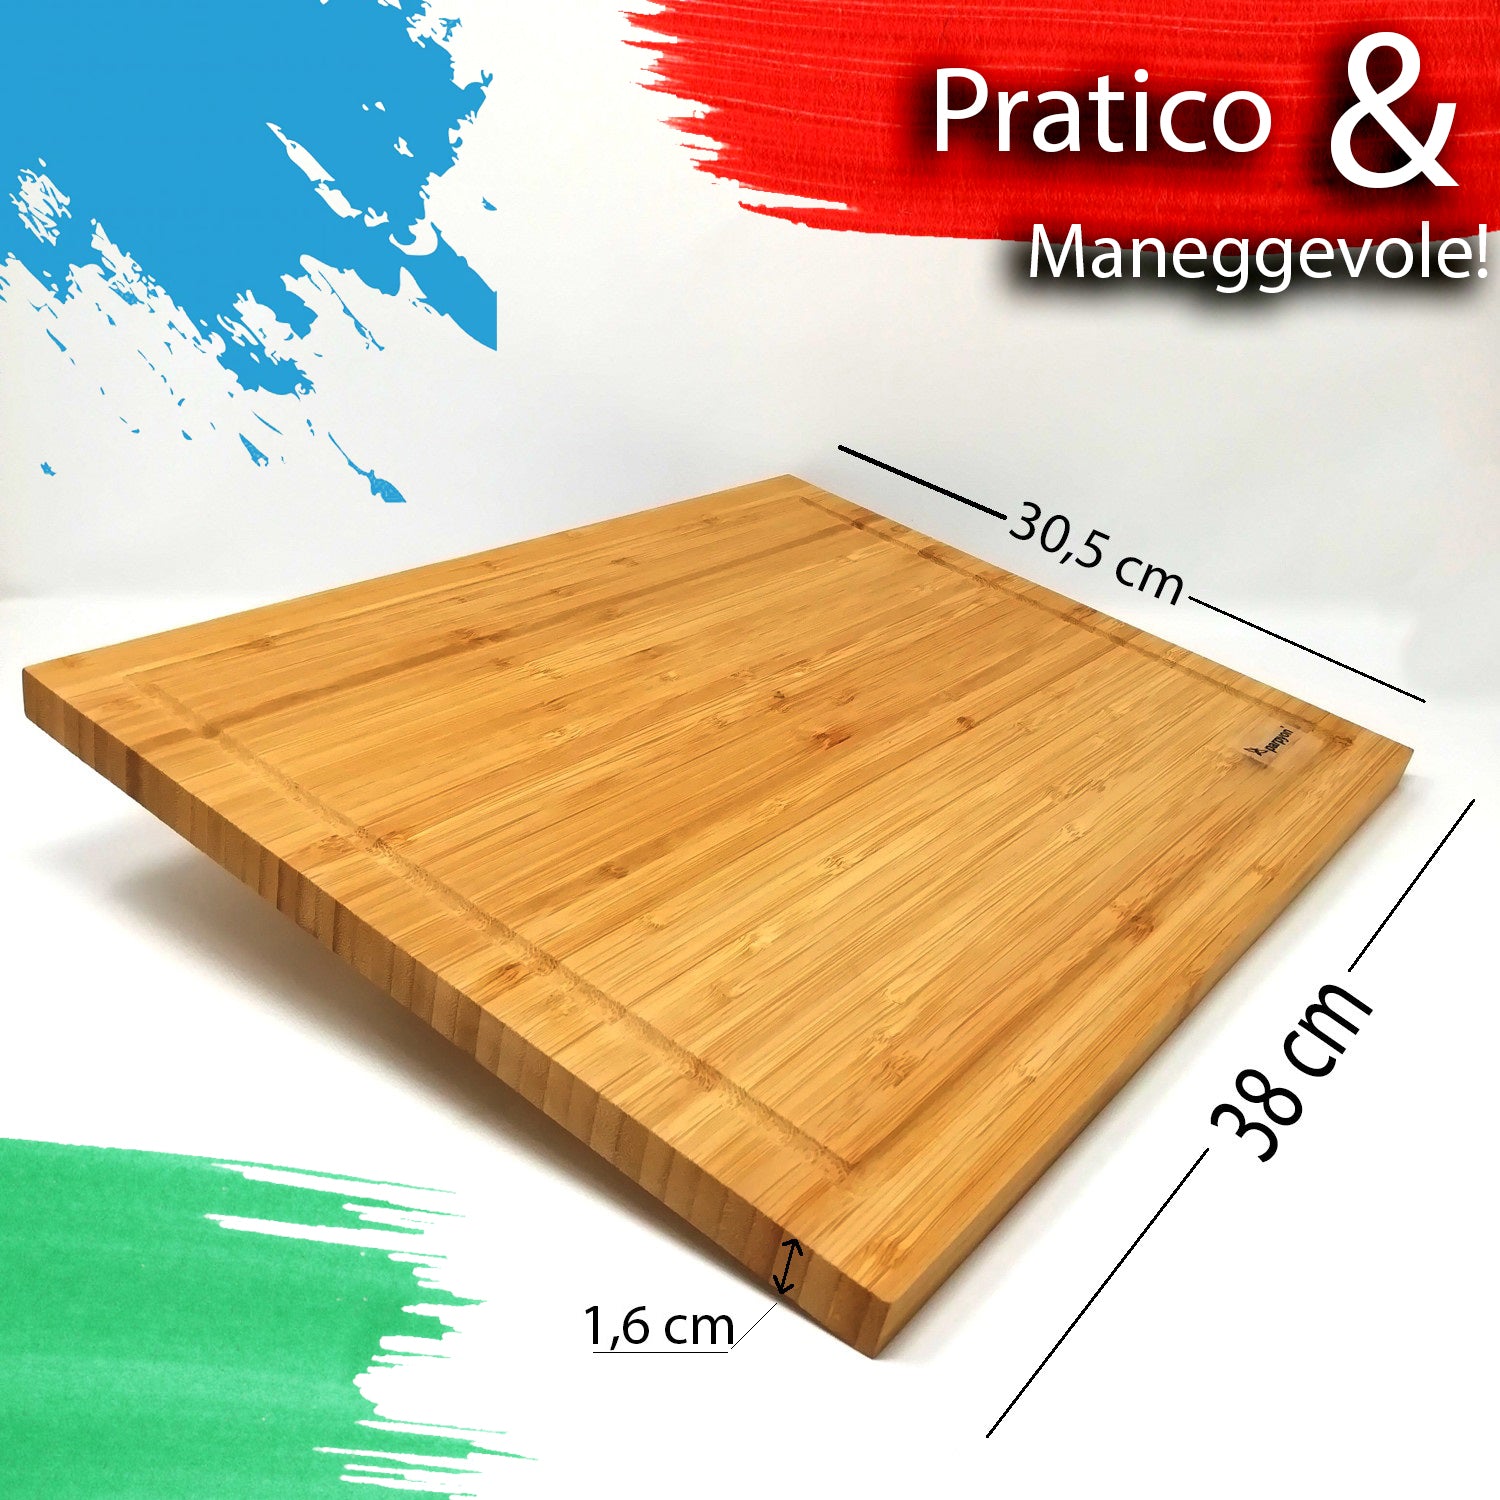 Tagliere da cucina in legno di Bamboo -Promo 2pz